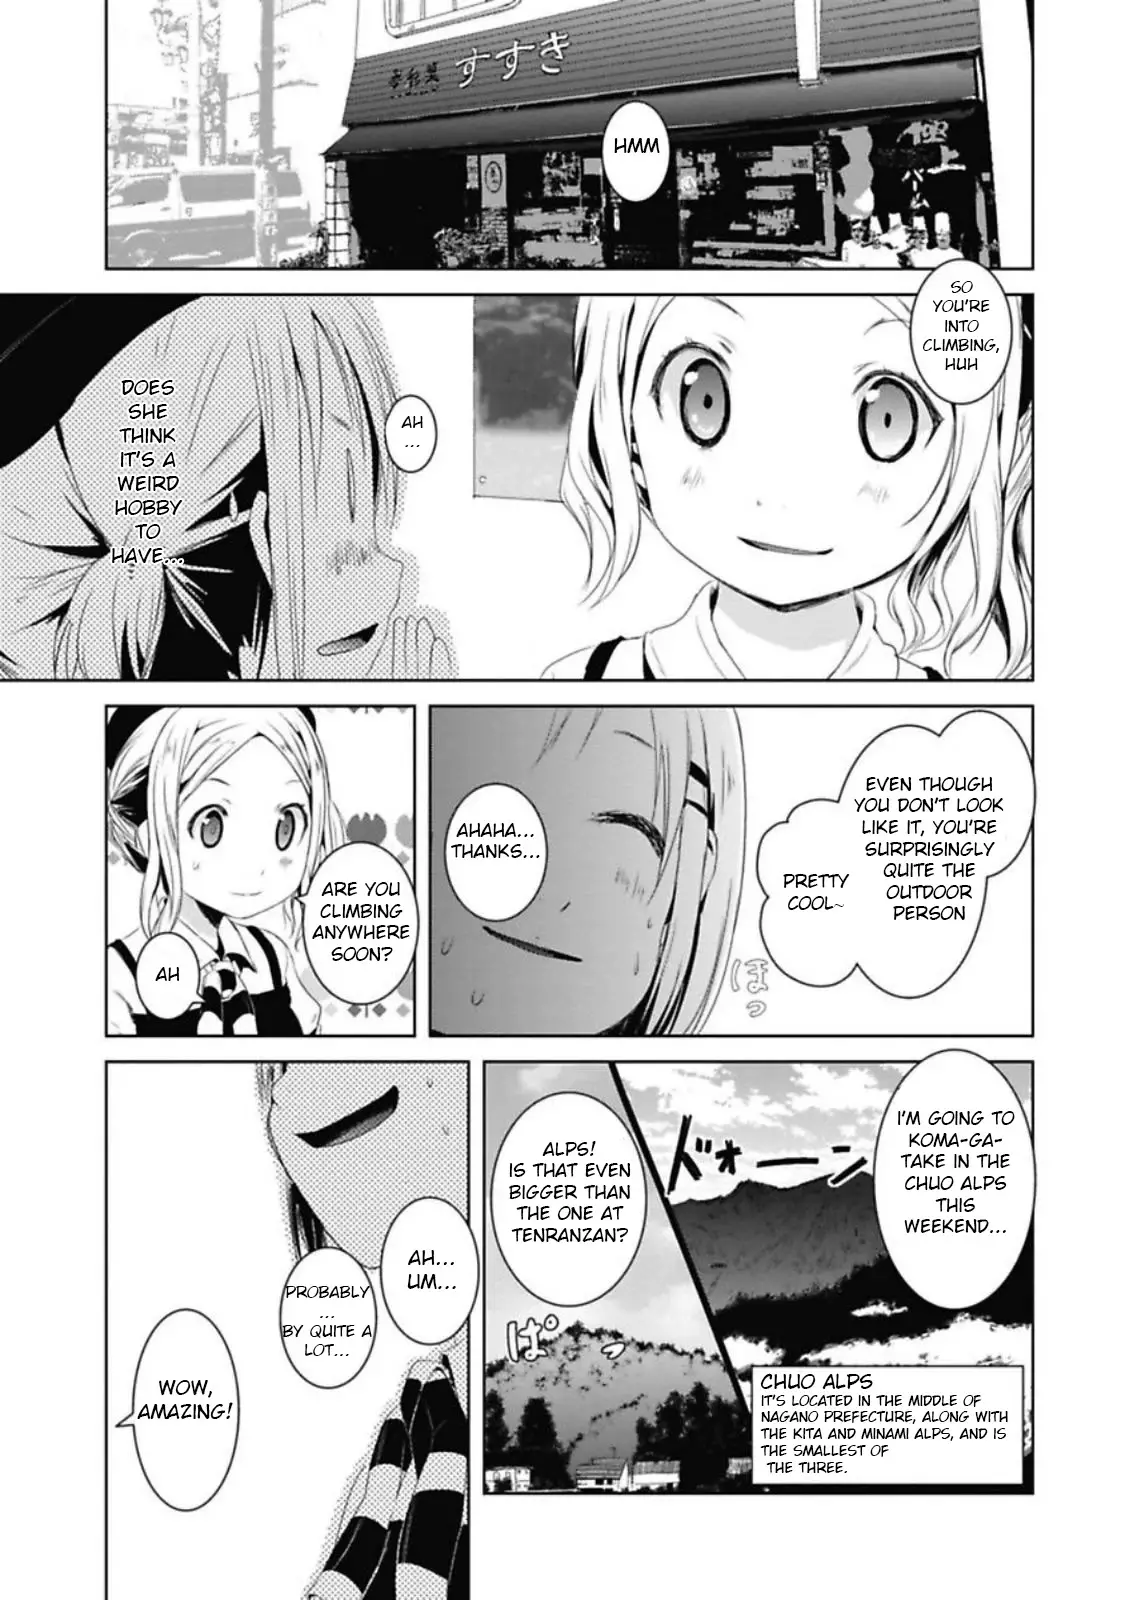 Yama No Susume - 39 page 1